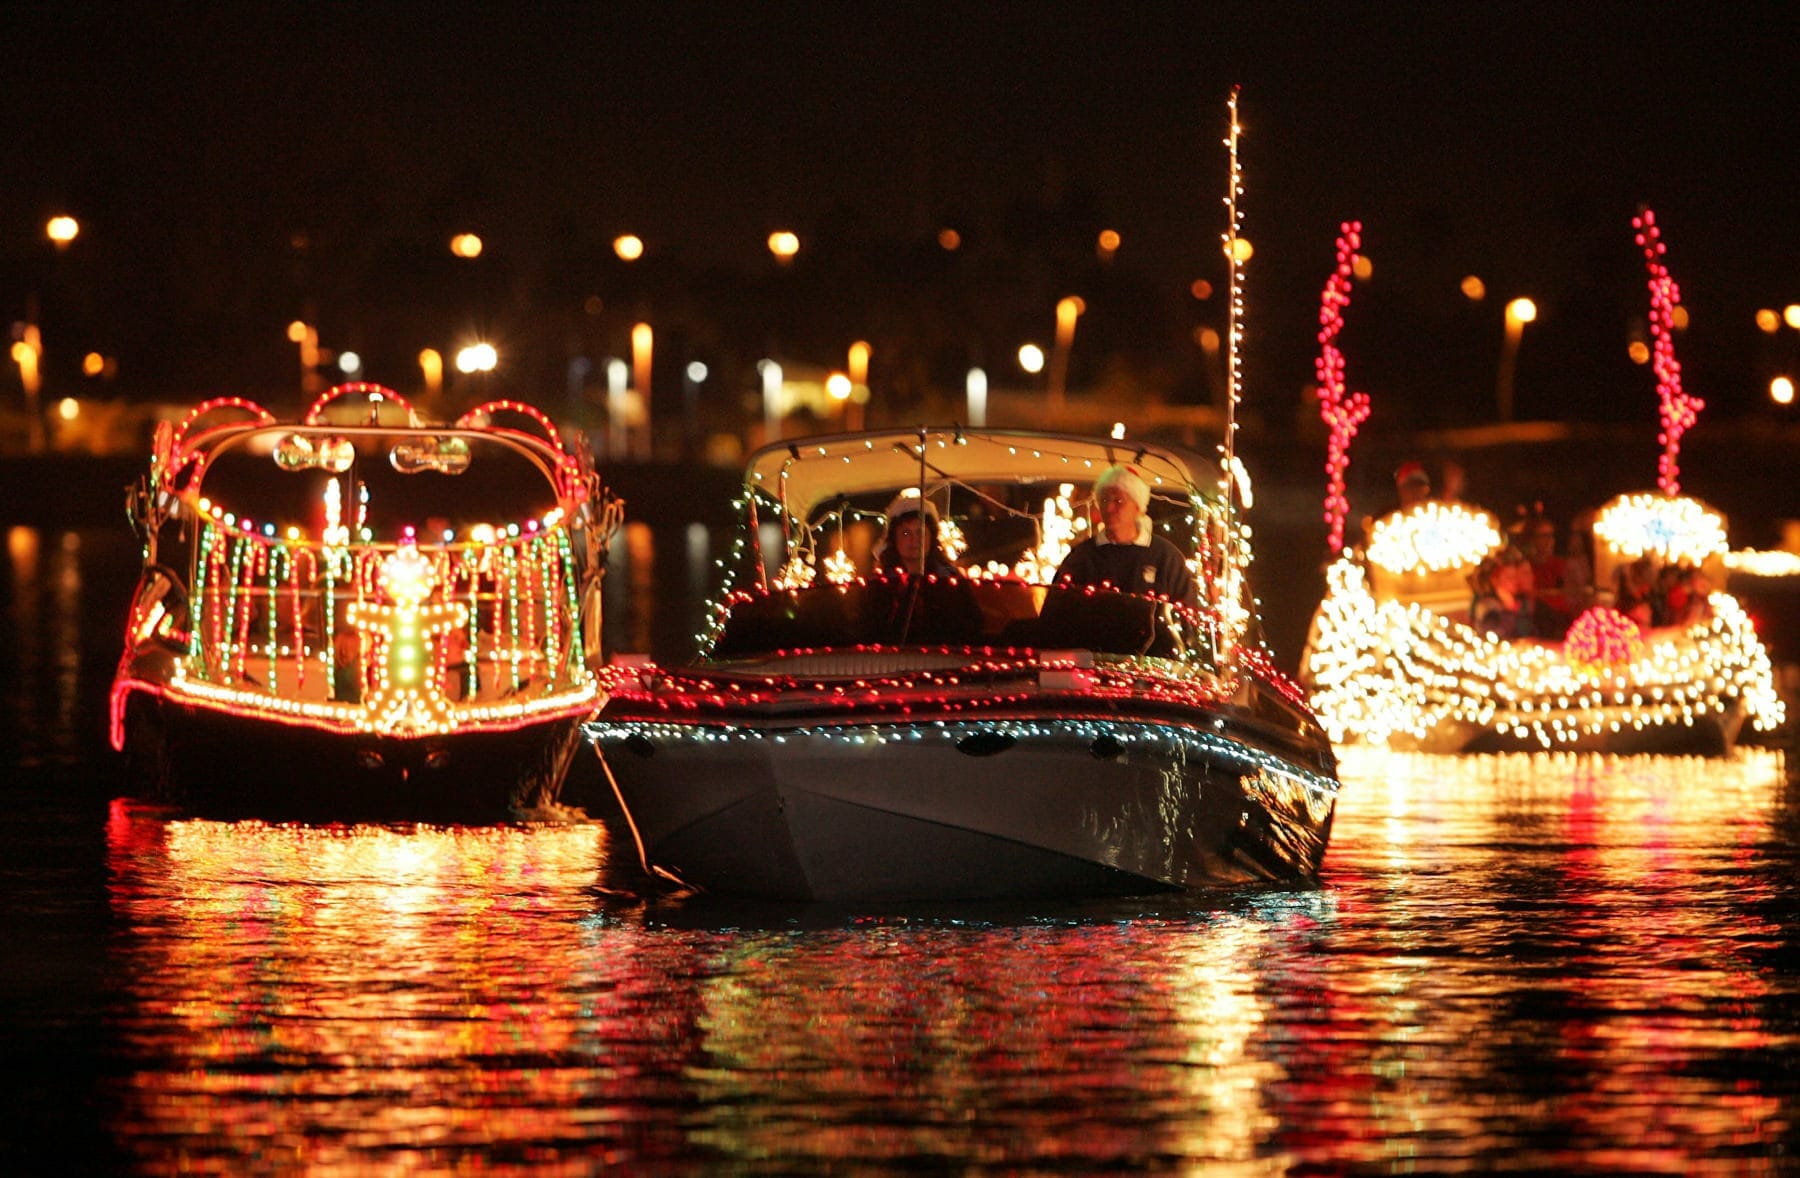 Fantasy of Lights Boat Parade at Tempe Town Lake